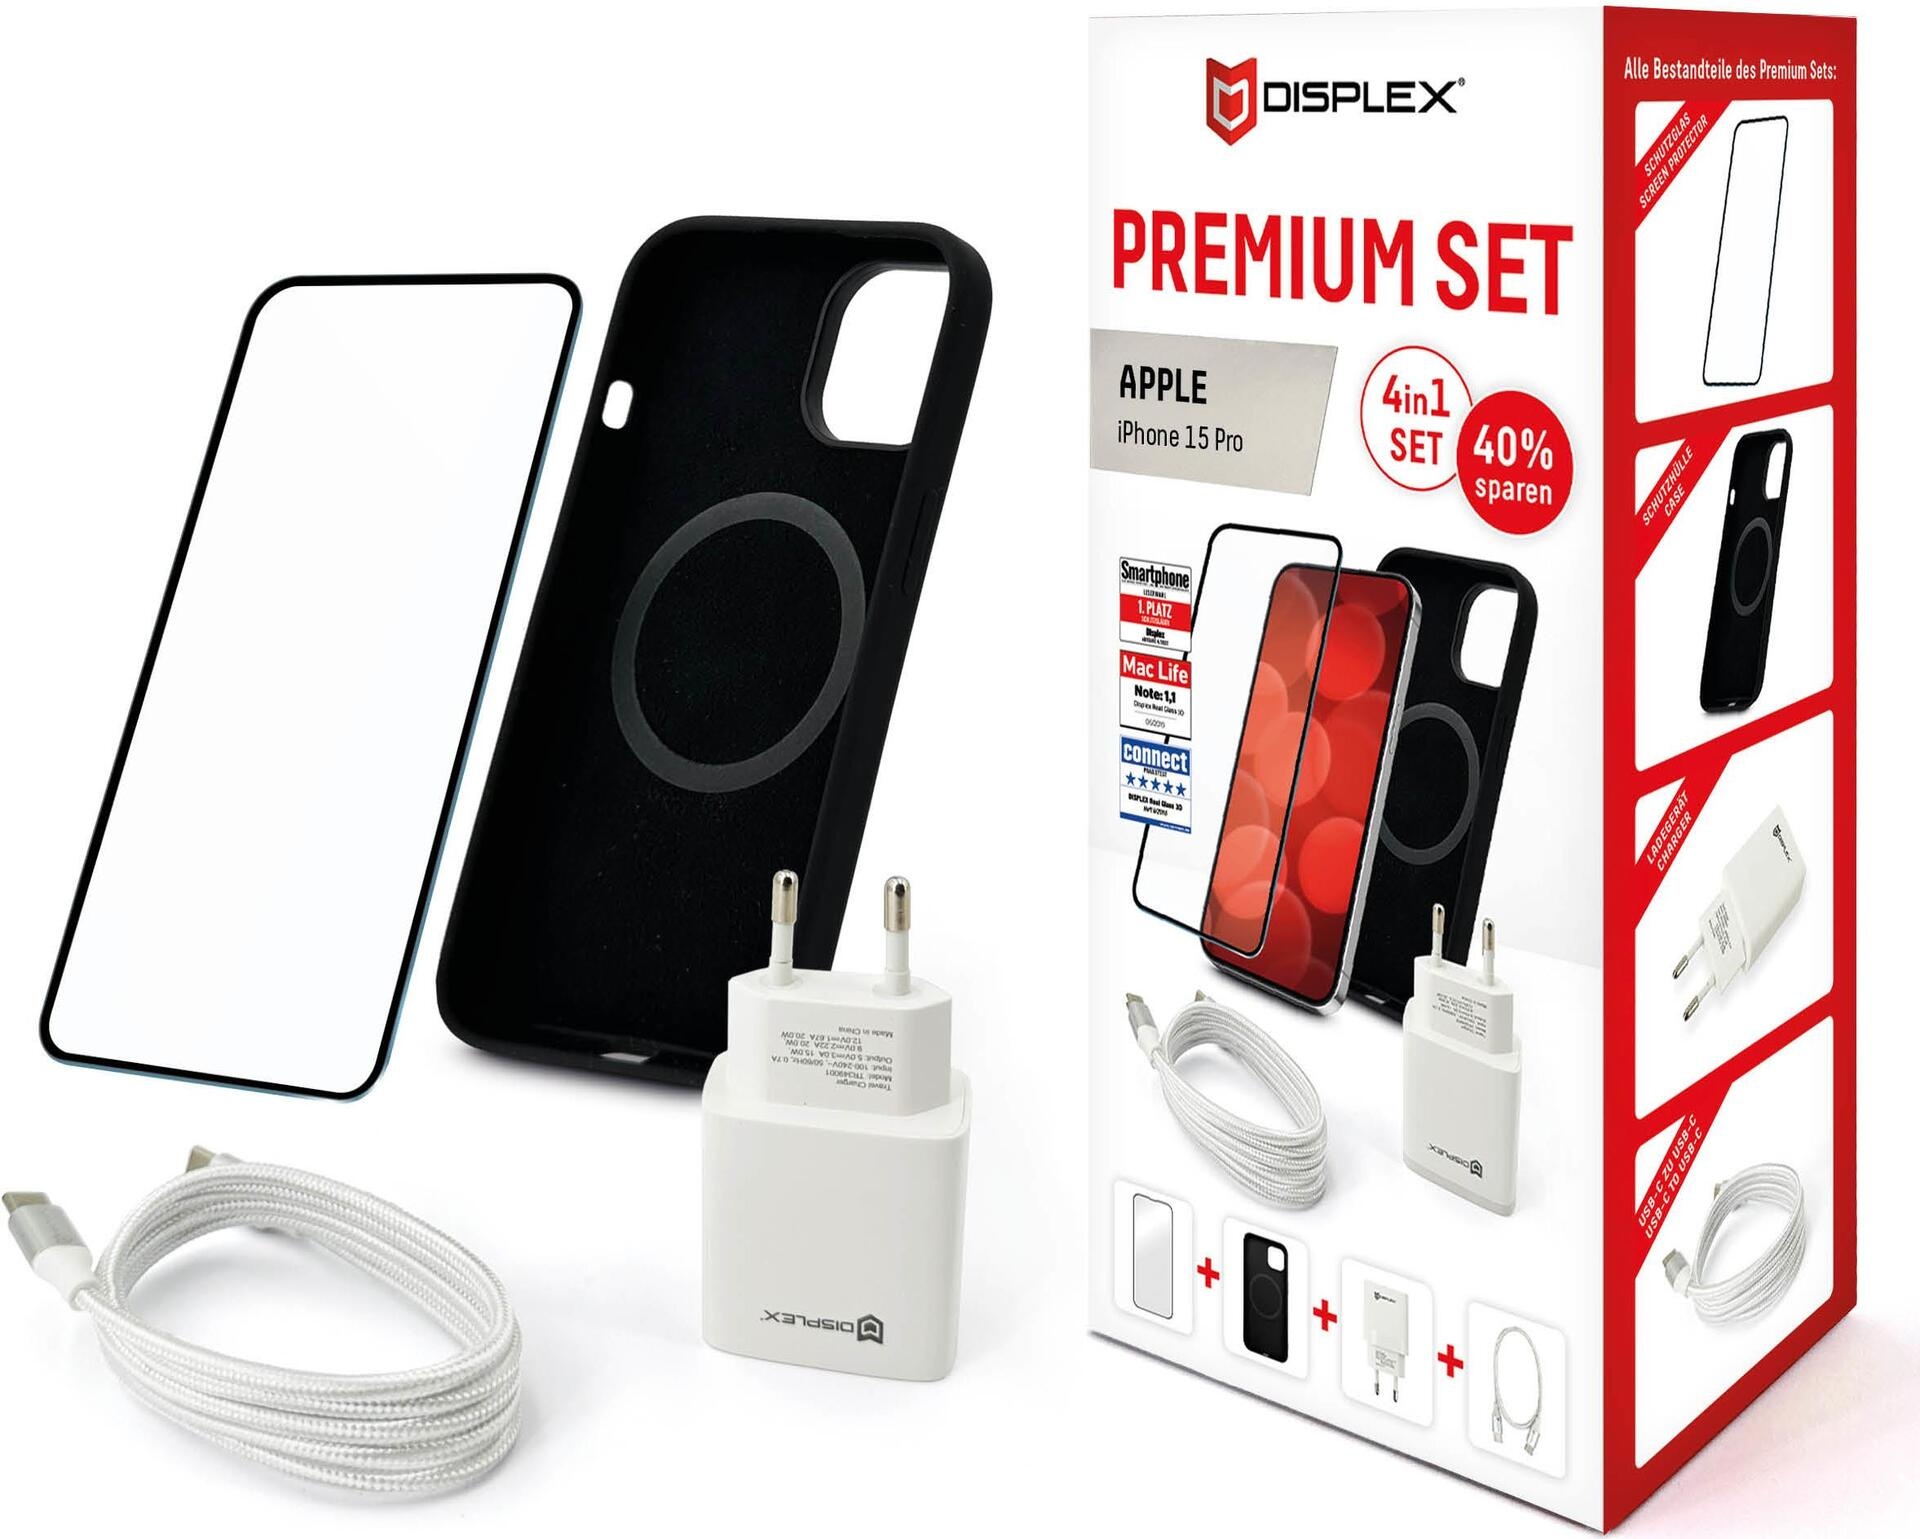 Displex Premium 4 in 1 Set für Apple iPhone 15 Pro - Transparent - Schwarz - Weiß - 244 g - 70 mm - 95 mm - 200 mm - USB Typ-C auf USB Typ-C (01869)